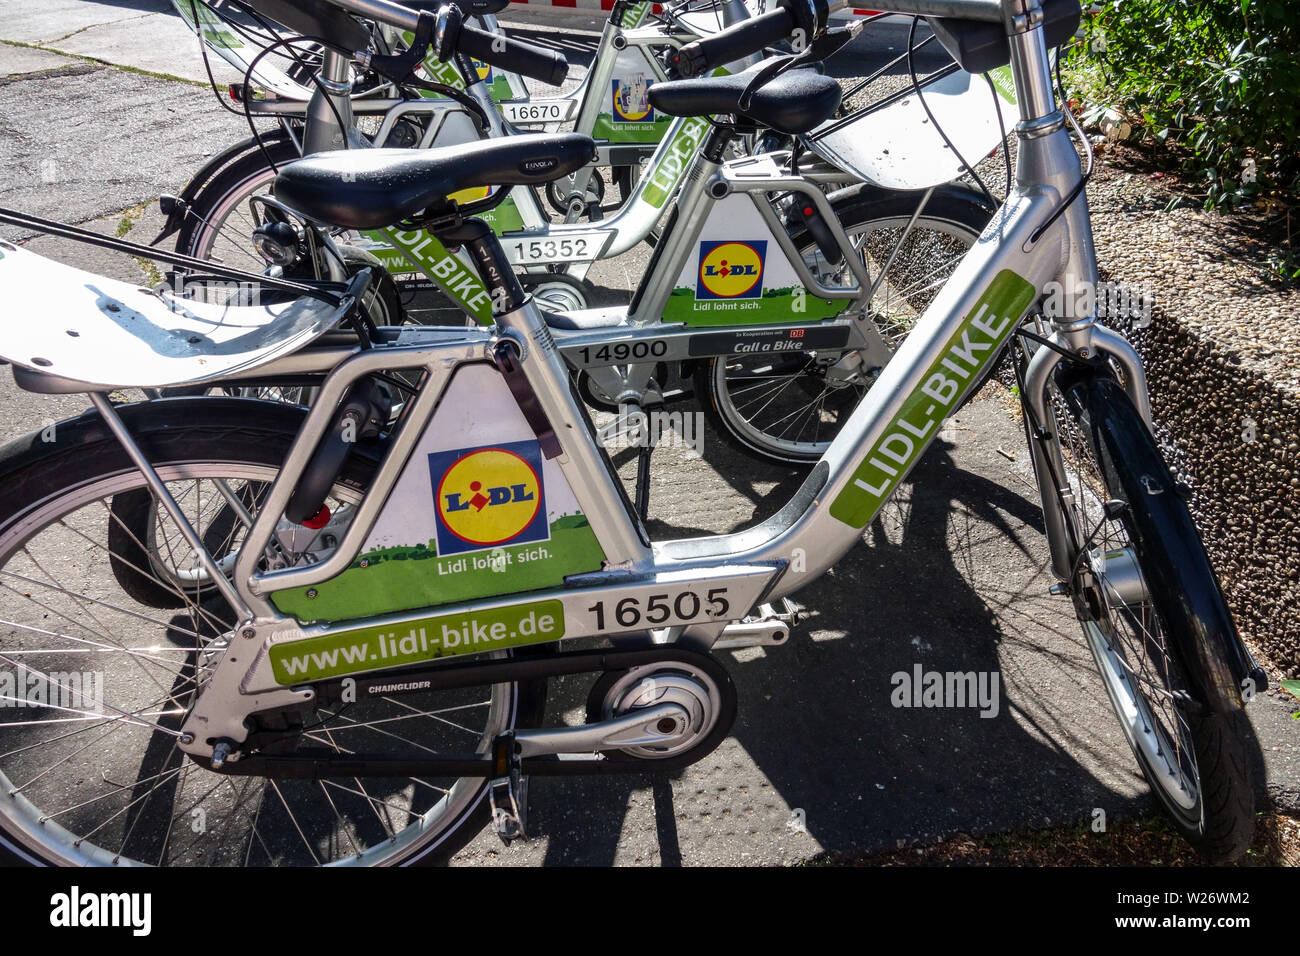 Lidl rental bike, Berlin, Germany Stock Photo - Alamy